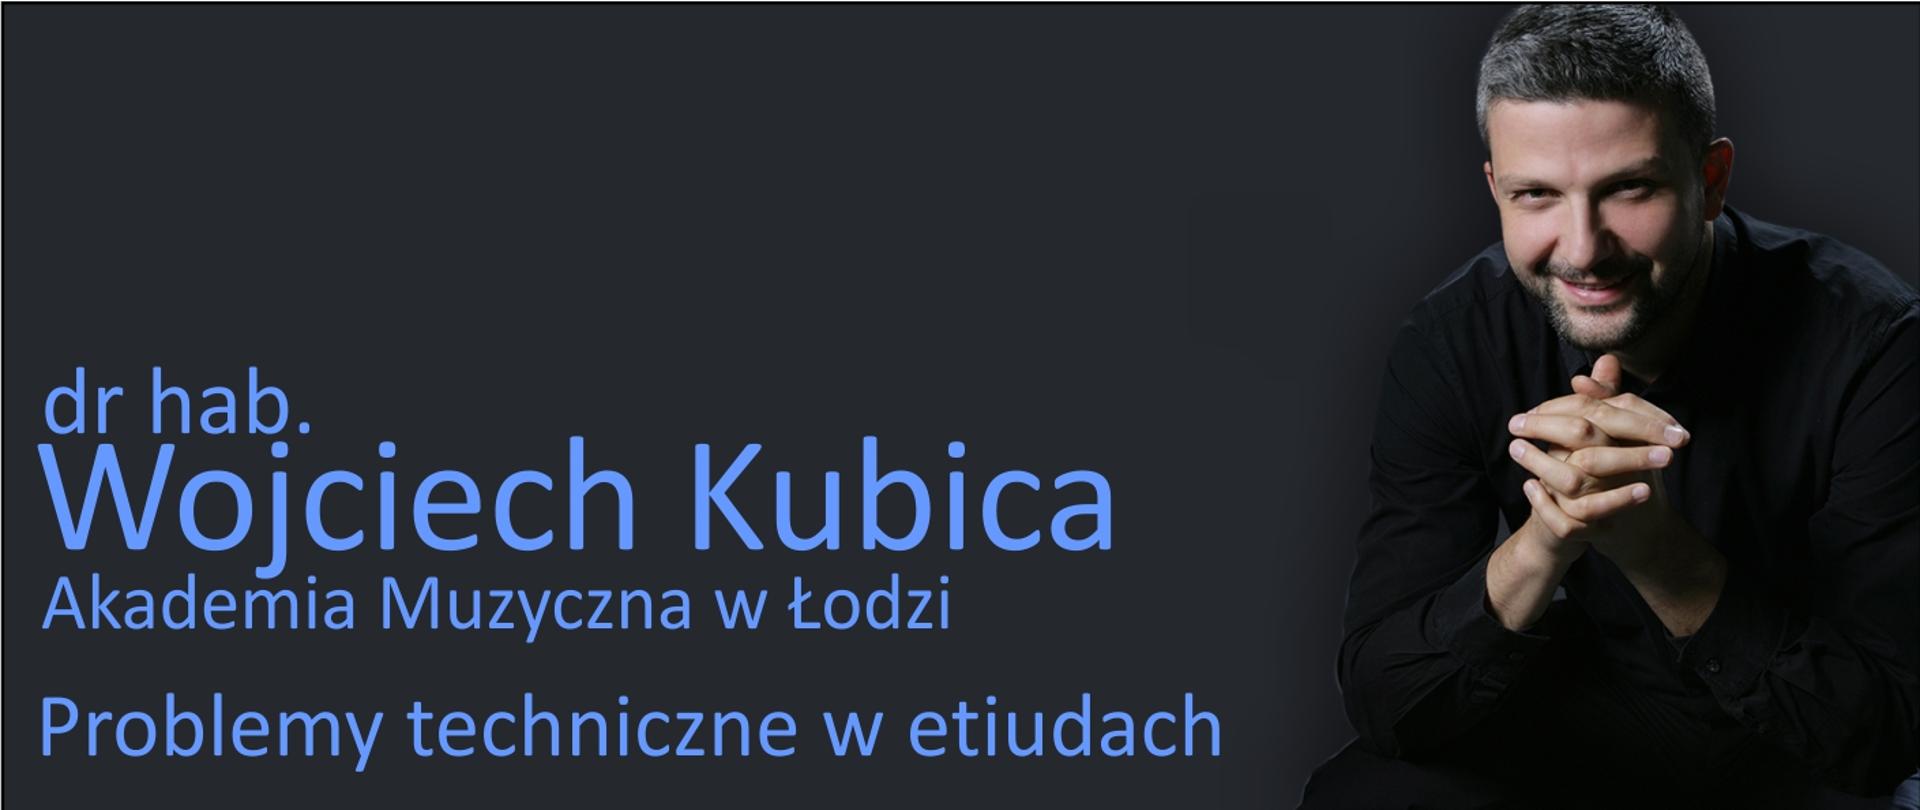 Grafika przedstawia postać Wojciecha Kubicy oraz prezentuje napis: dr hab. Wojciech Kubica, Akademia Muzyczna w Łodzi, problemy techniczne w etiudach